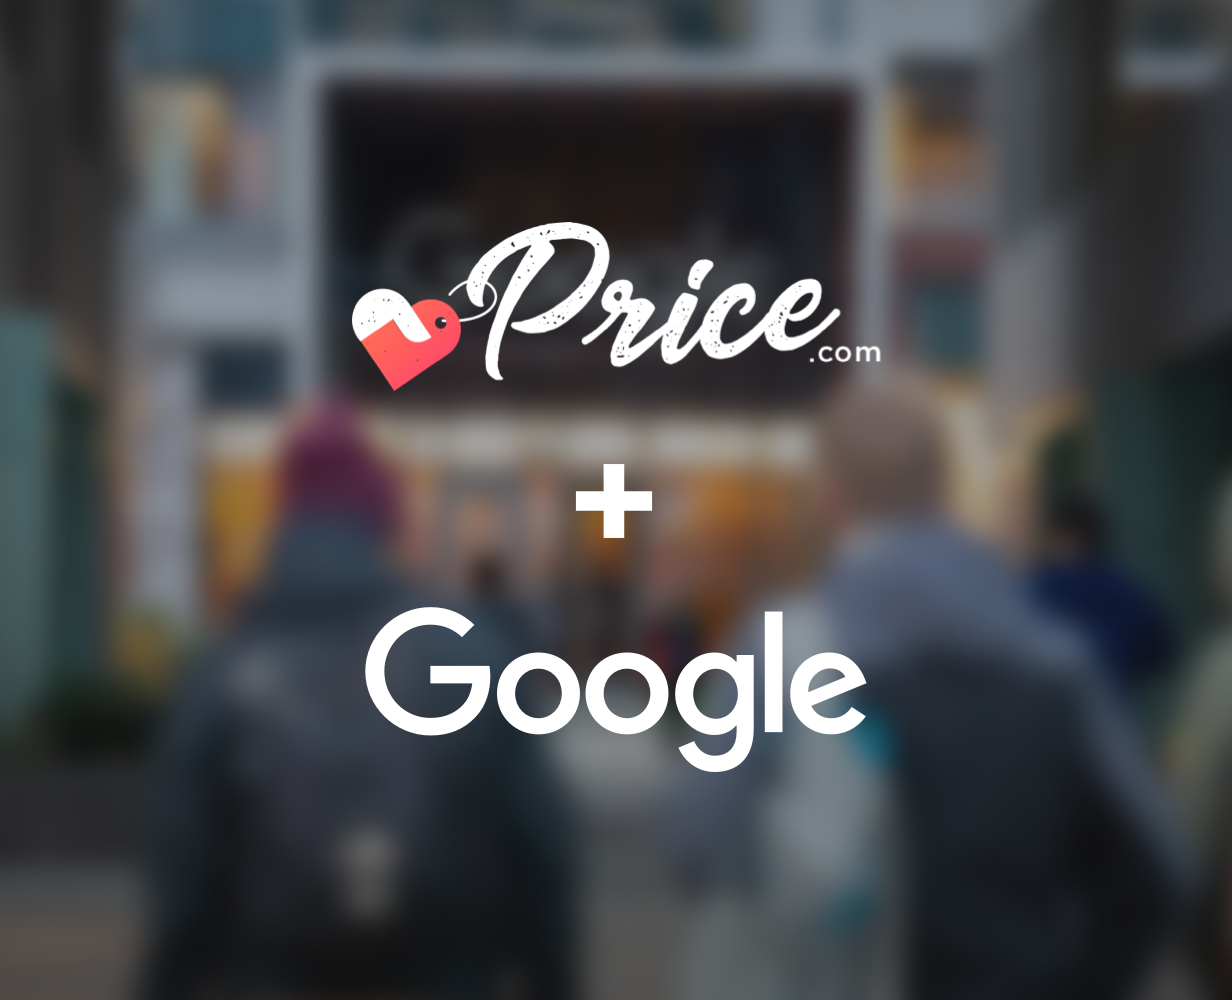 Price.com Partnership with Google